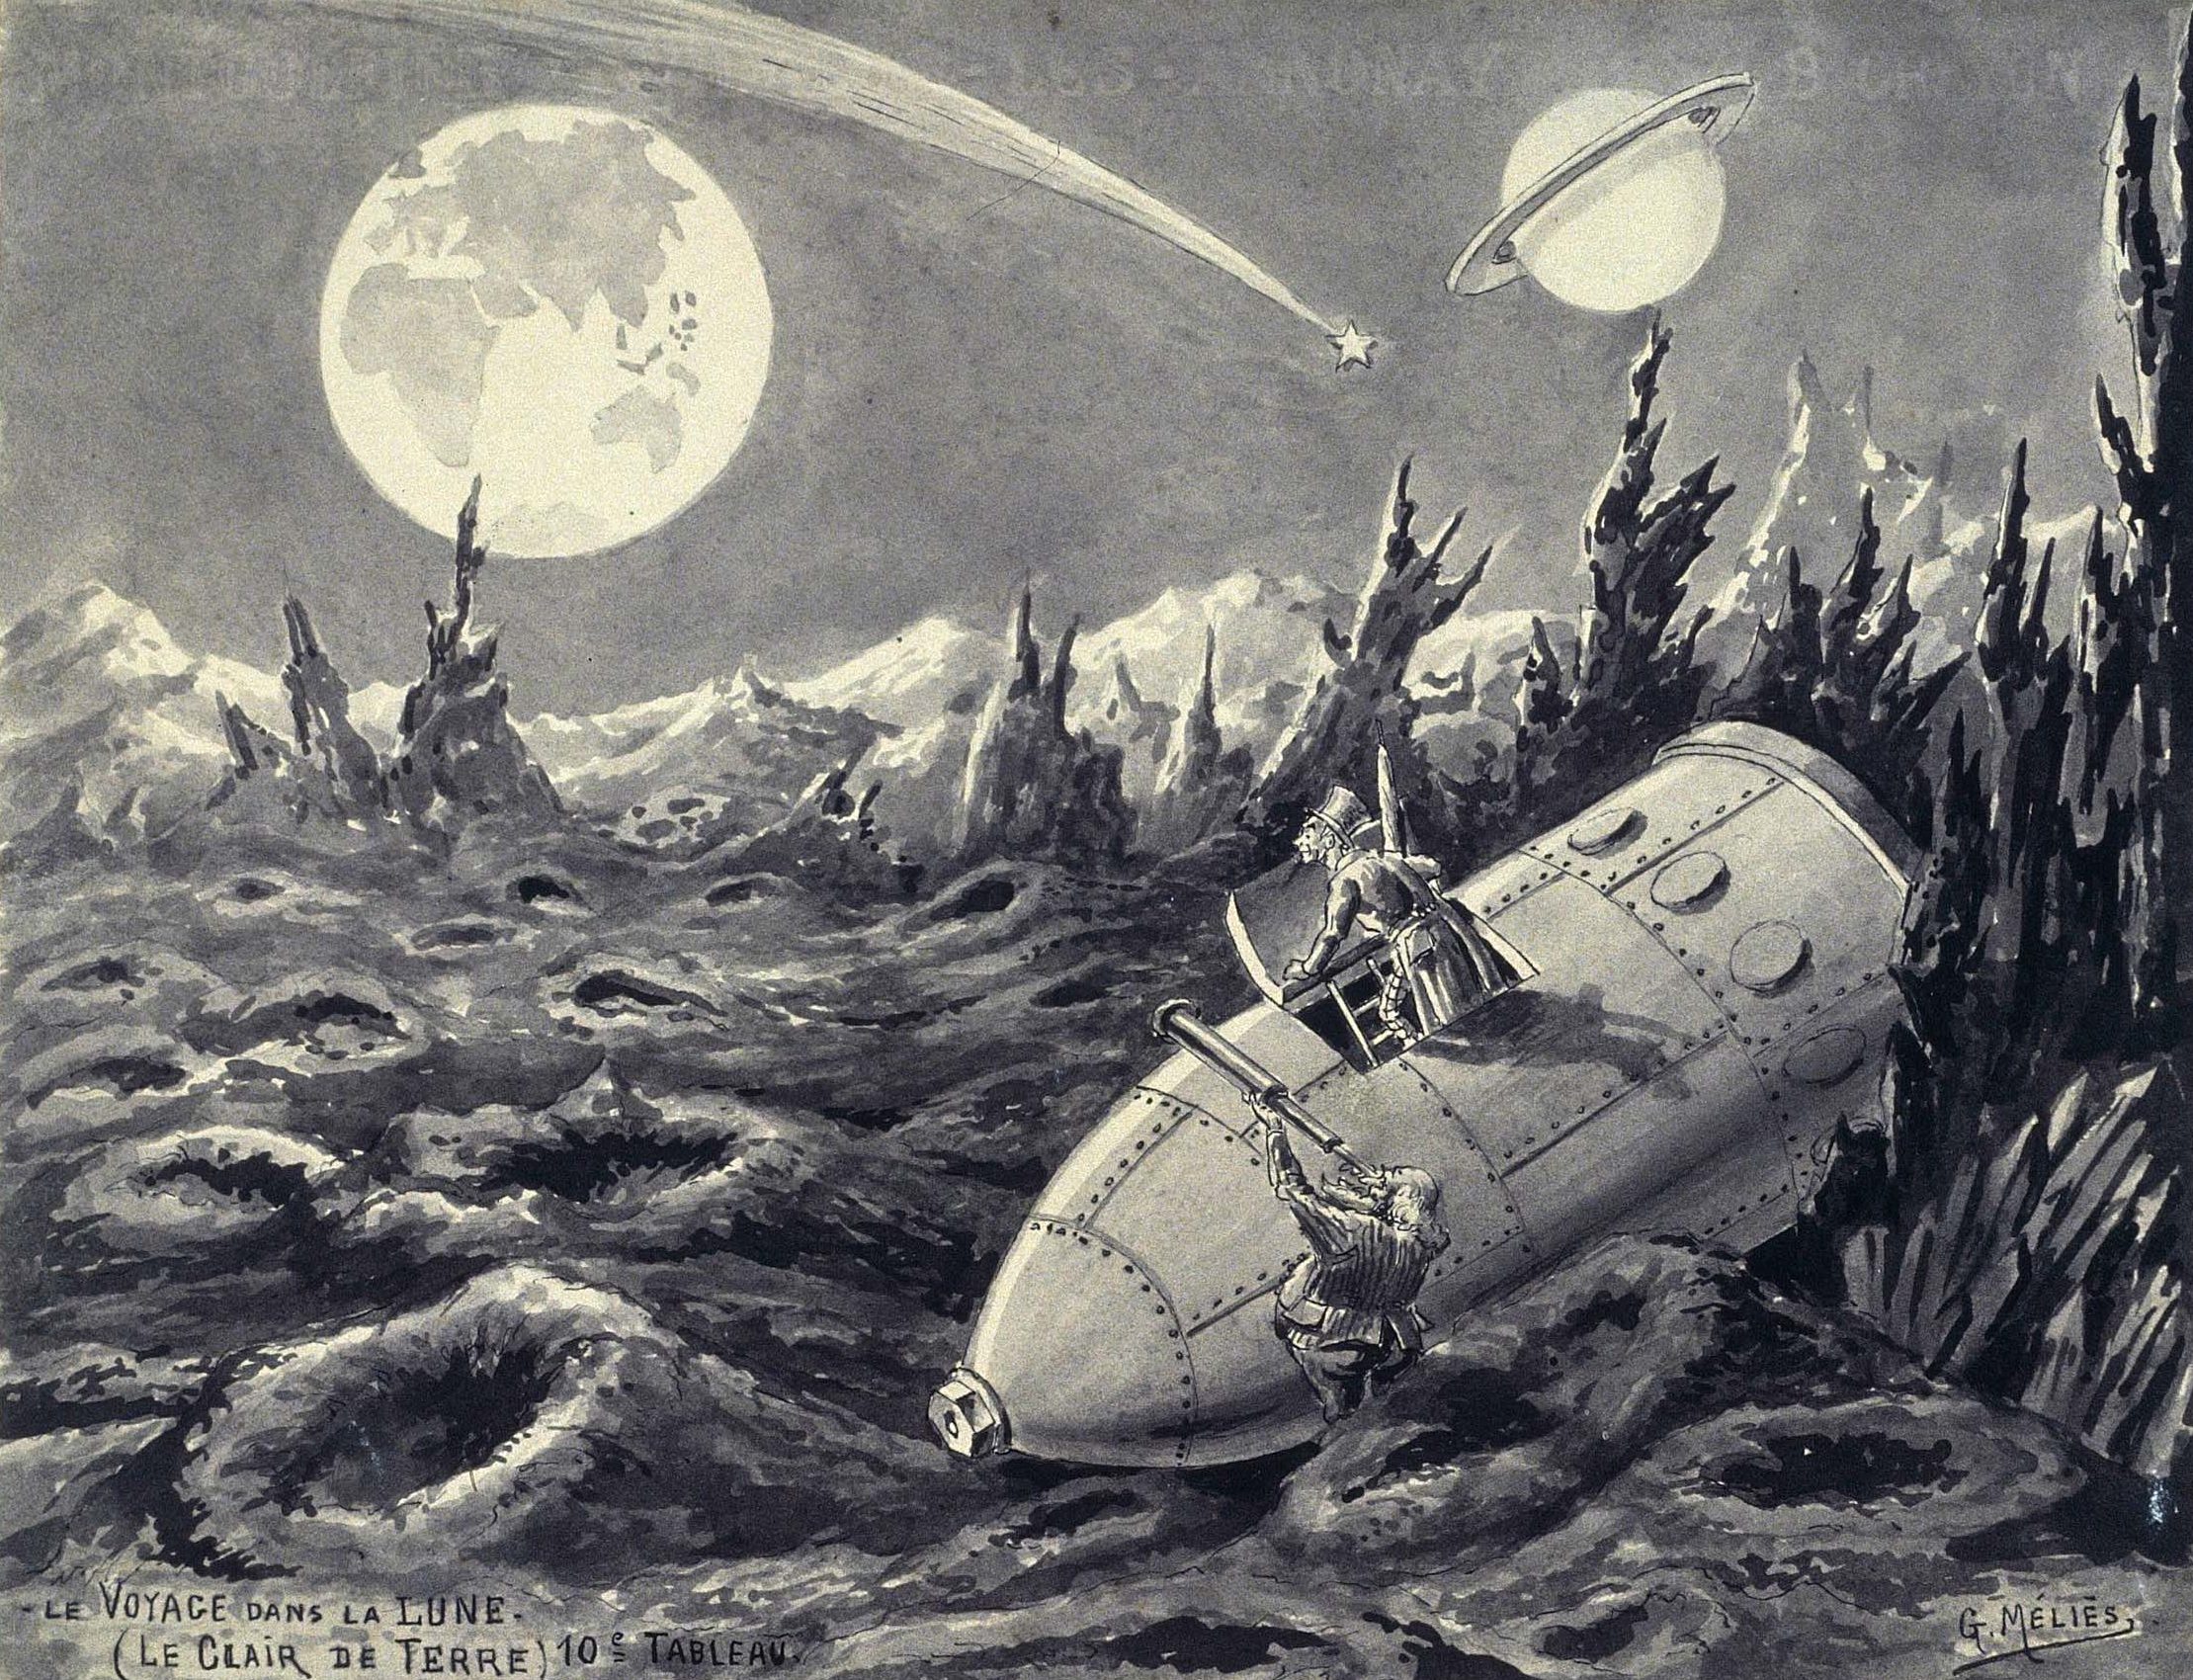 Georges Melies, Le voyage dans la lune Le clair de terre. Courtesy collection of the Cinematheque Francaise